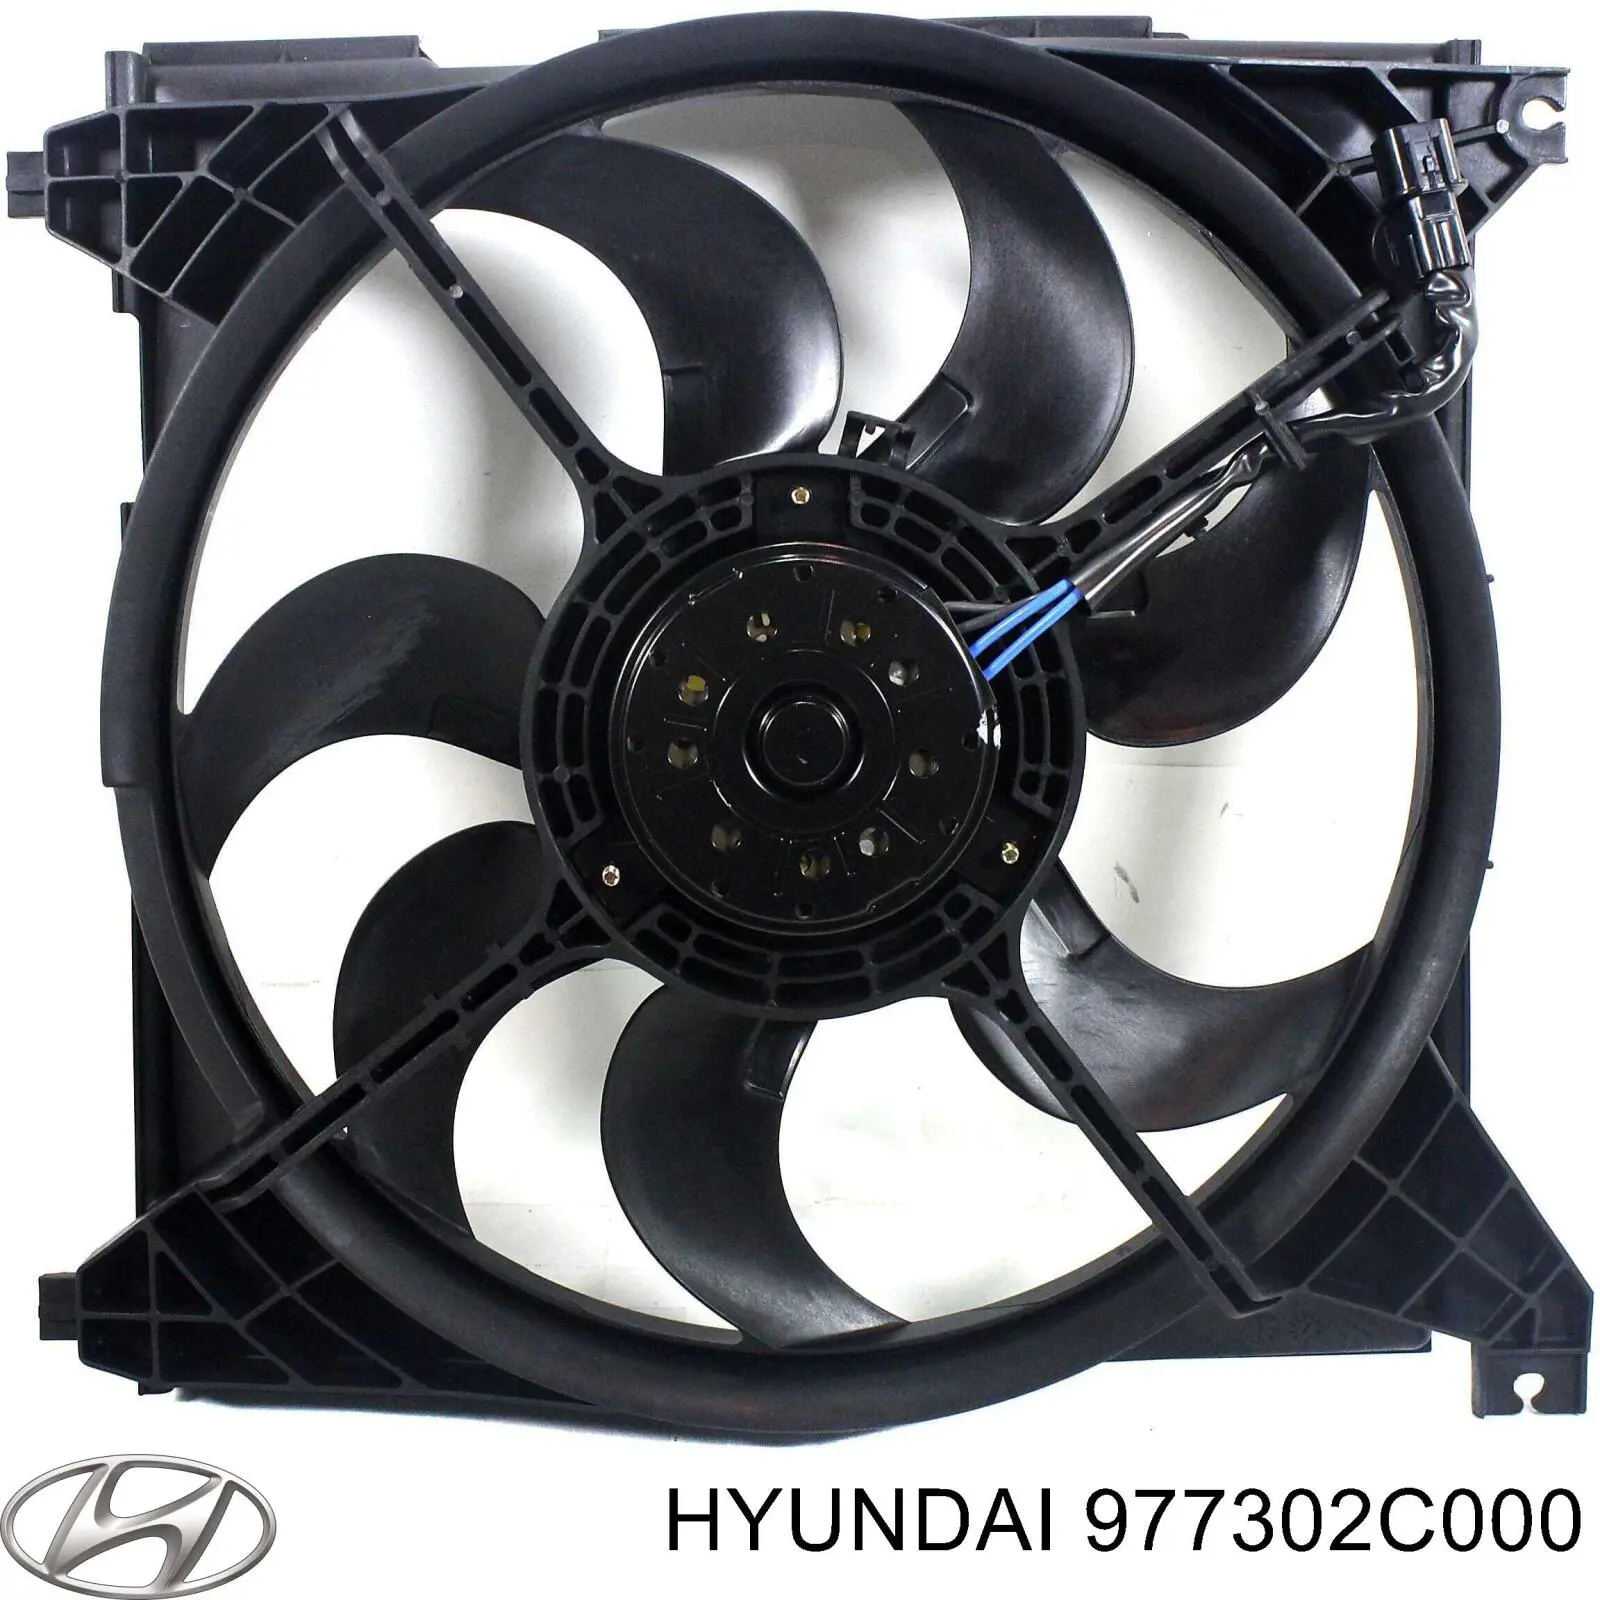 Difusor de radiador, aire acondicionado, completo con motor y rodete para Hyundai Tiburon 